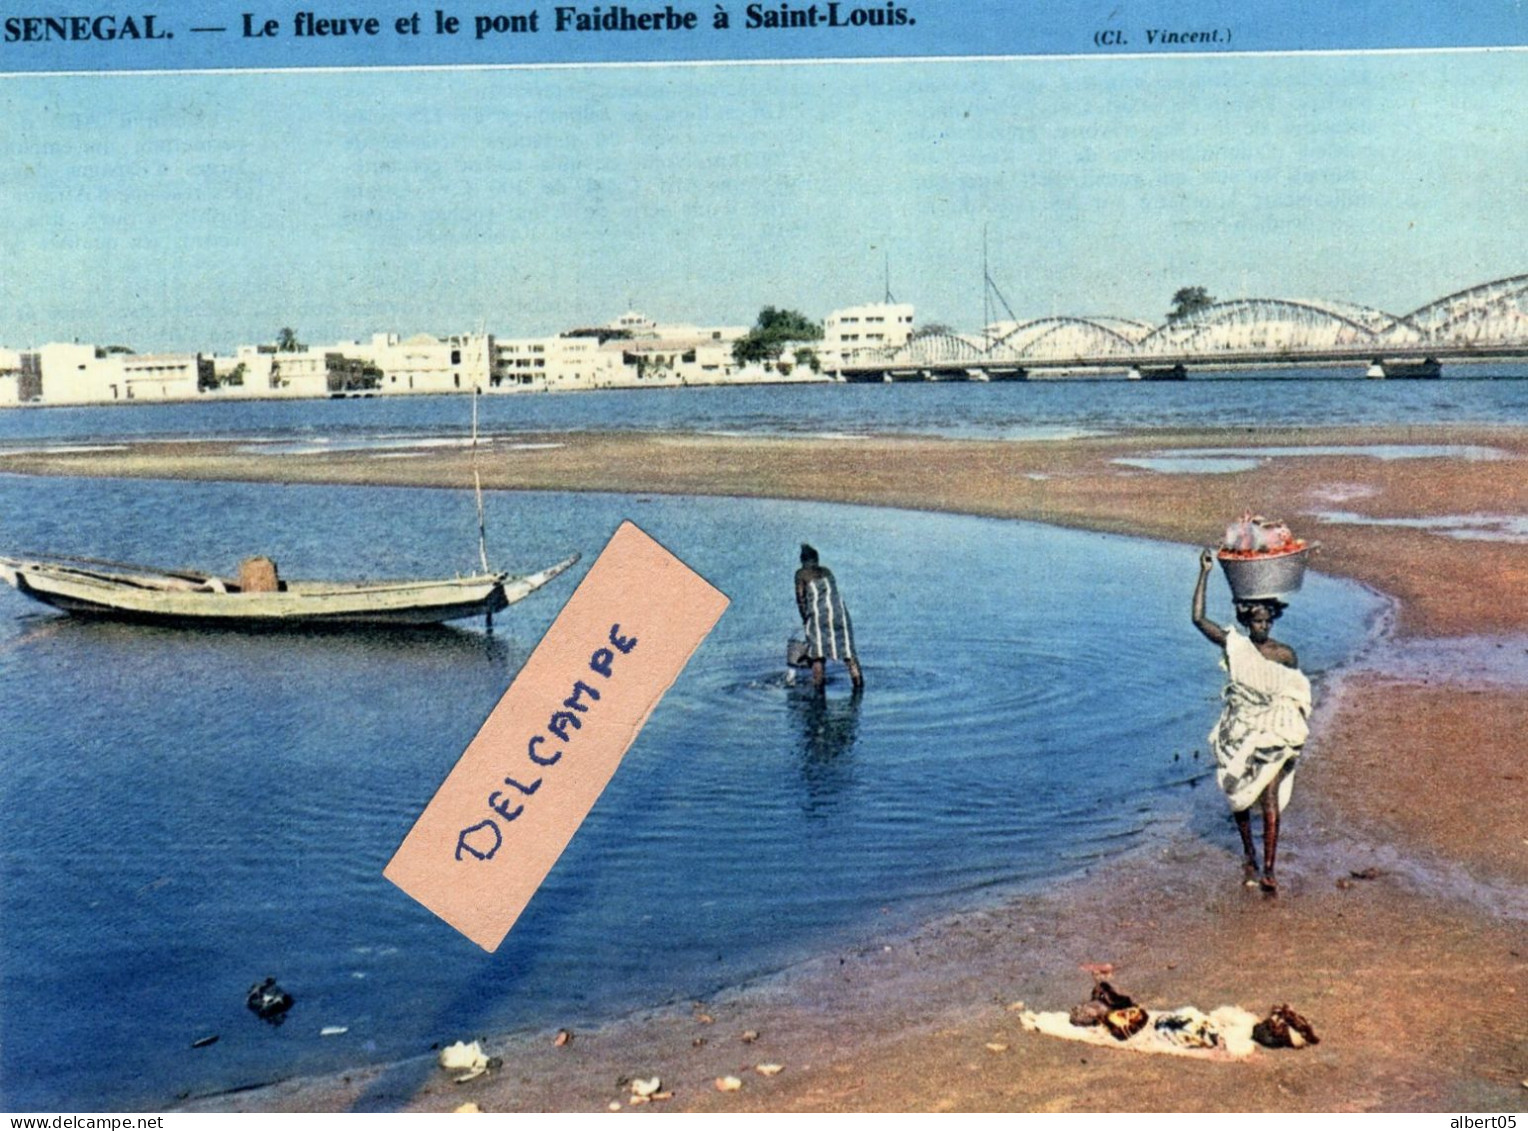 Le Fleuve Et Le Ponr Faidherbe à Saint Louis - Reproduction - Senegal